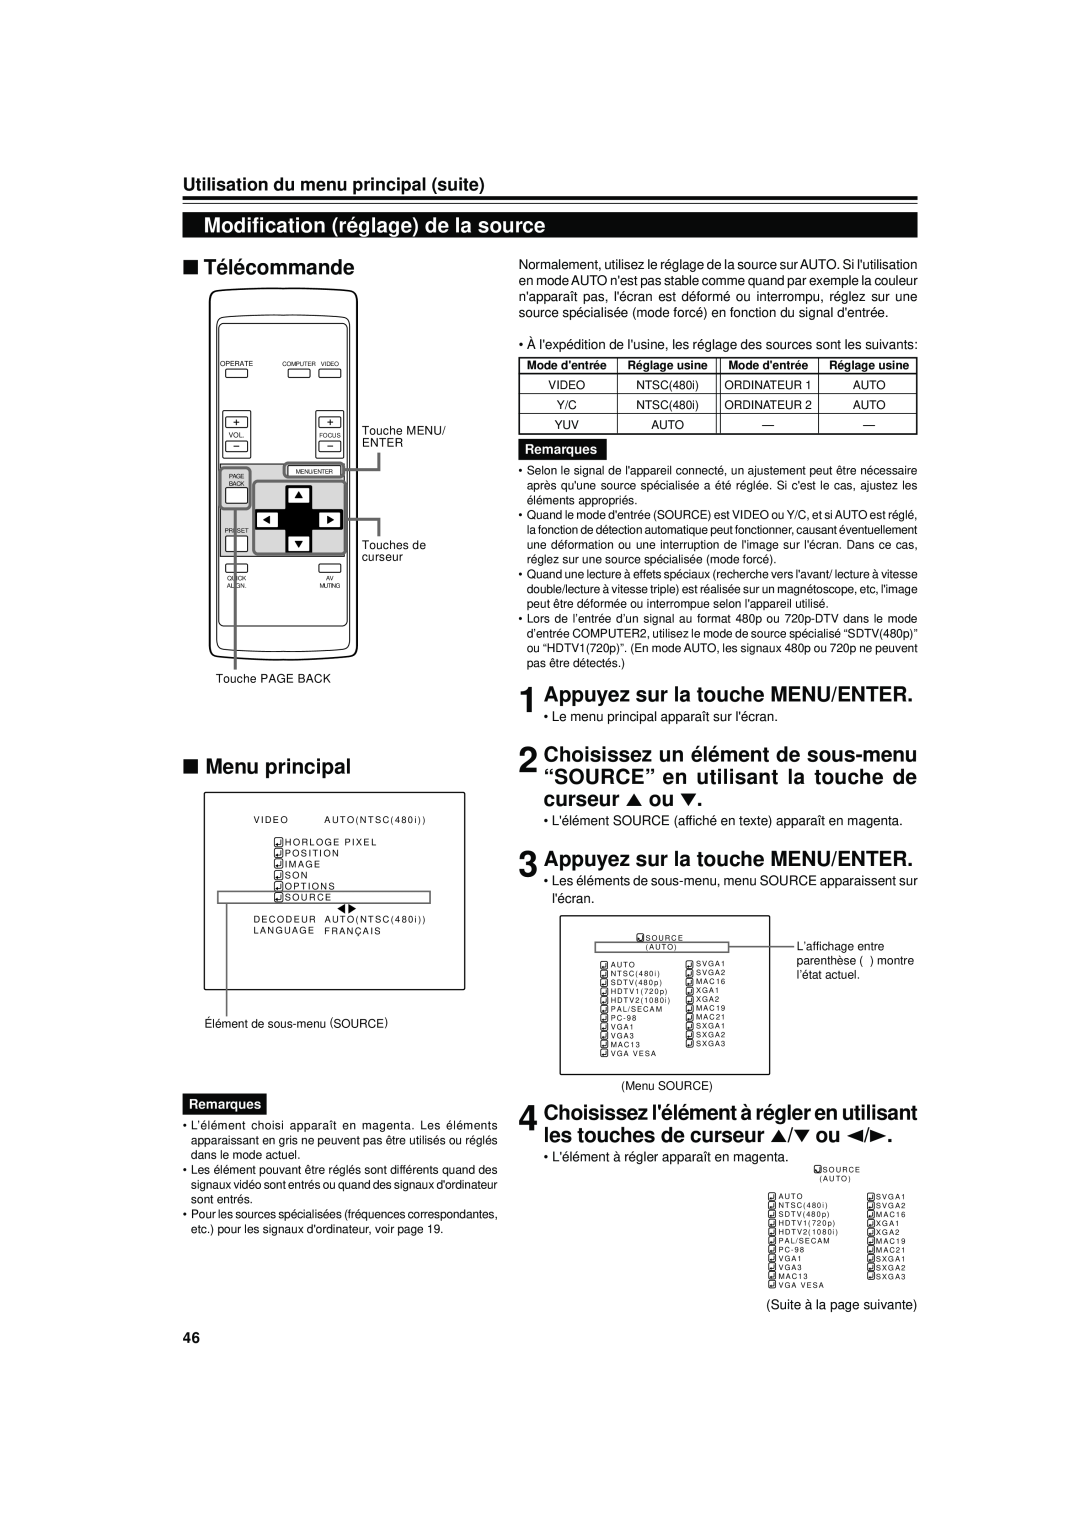 JVC DLA-S15U manual Modification réglage de la source, Télécommande, Menu principal, Utilisation du menu principal suite 